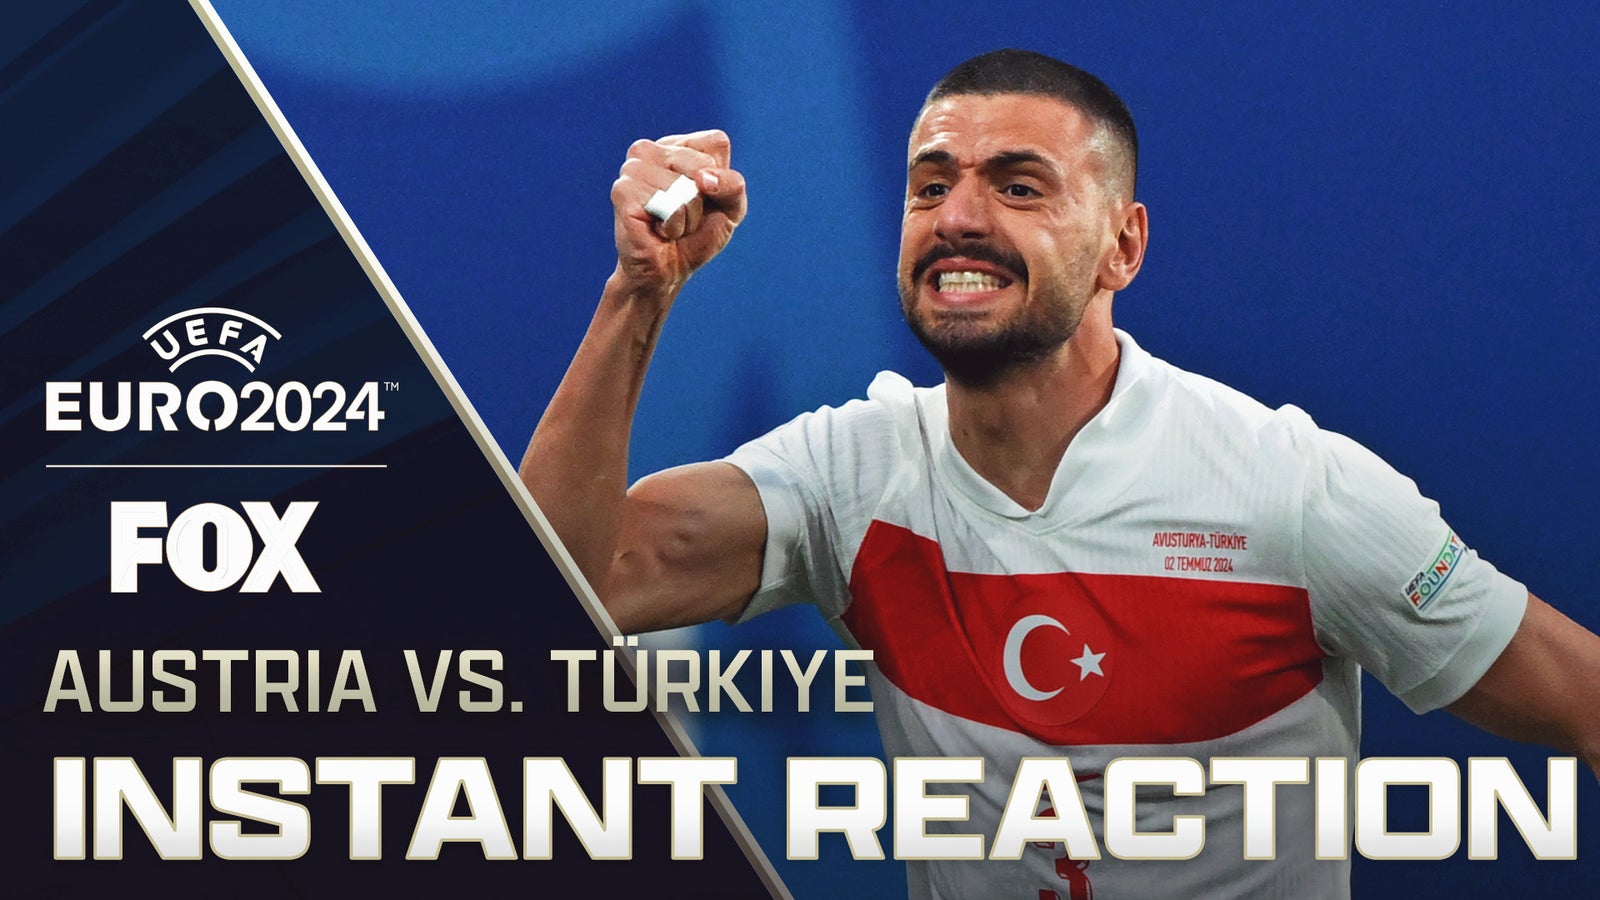 Türkiye UPSETS Austria to advance to the quarterfinals 